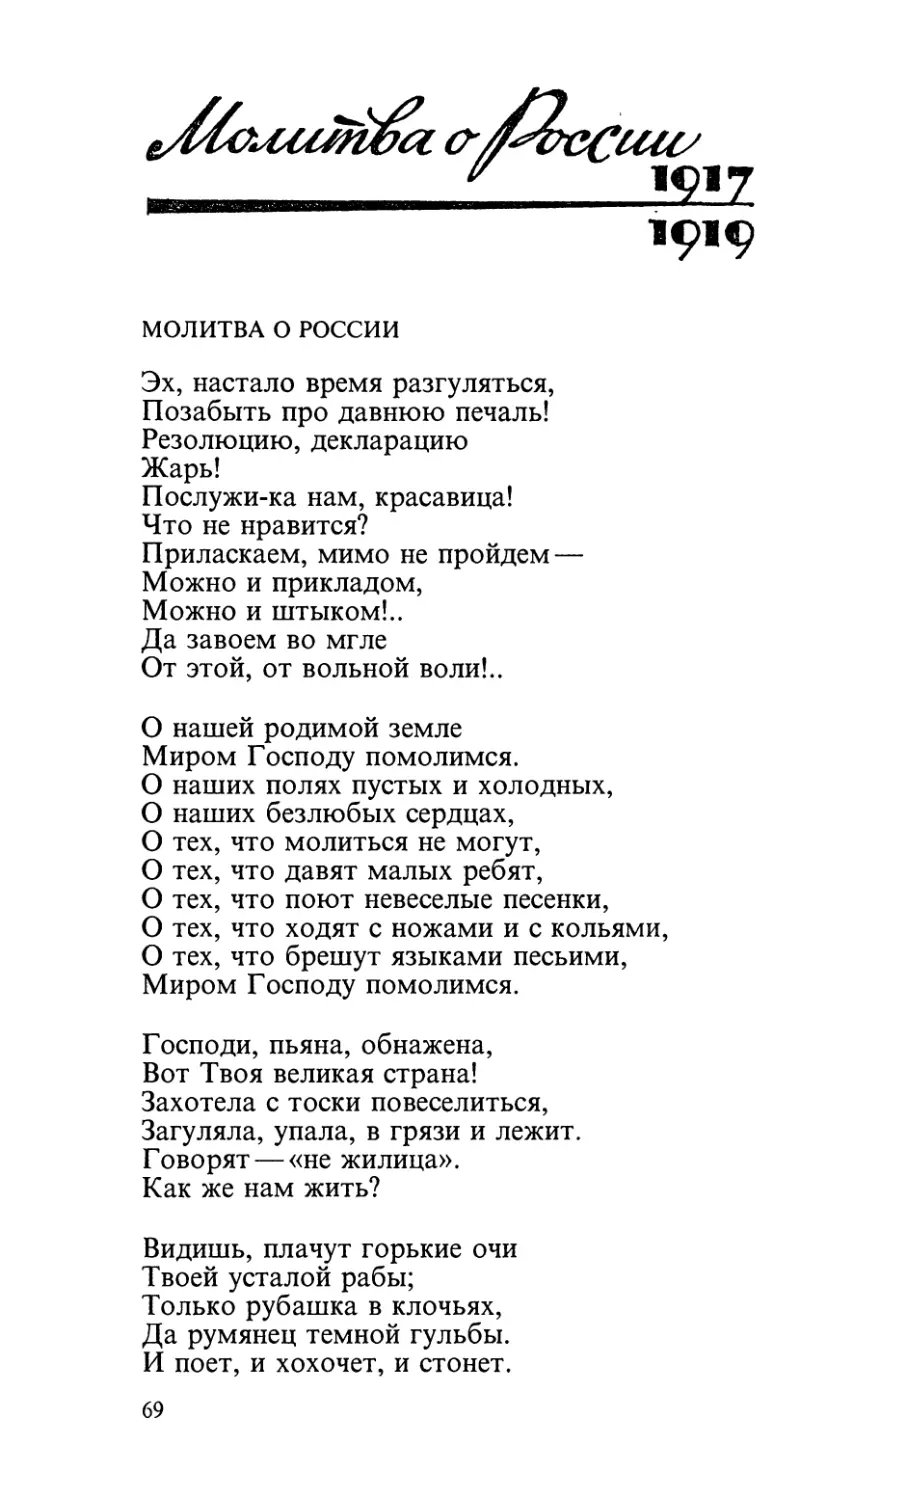 Молитва о России (1917—1919)
Молитва о России